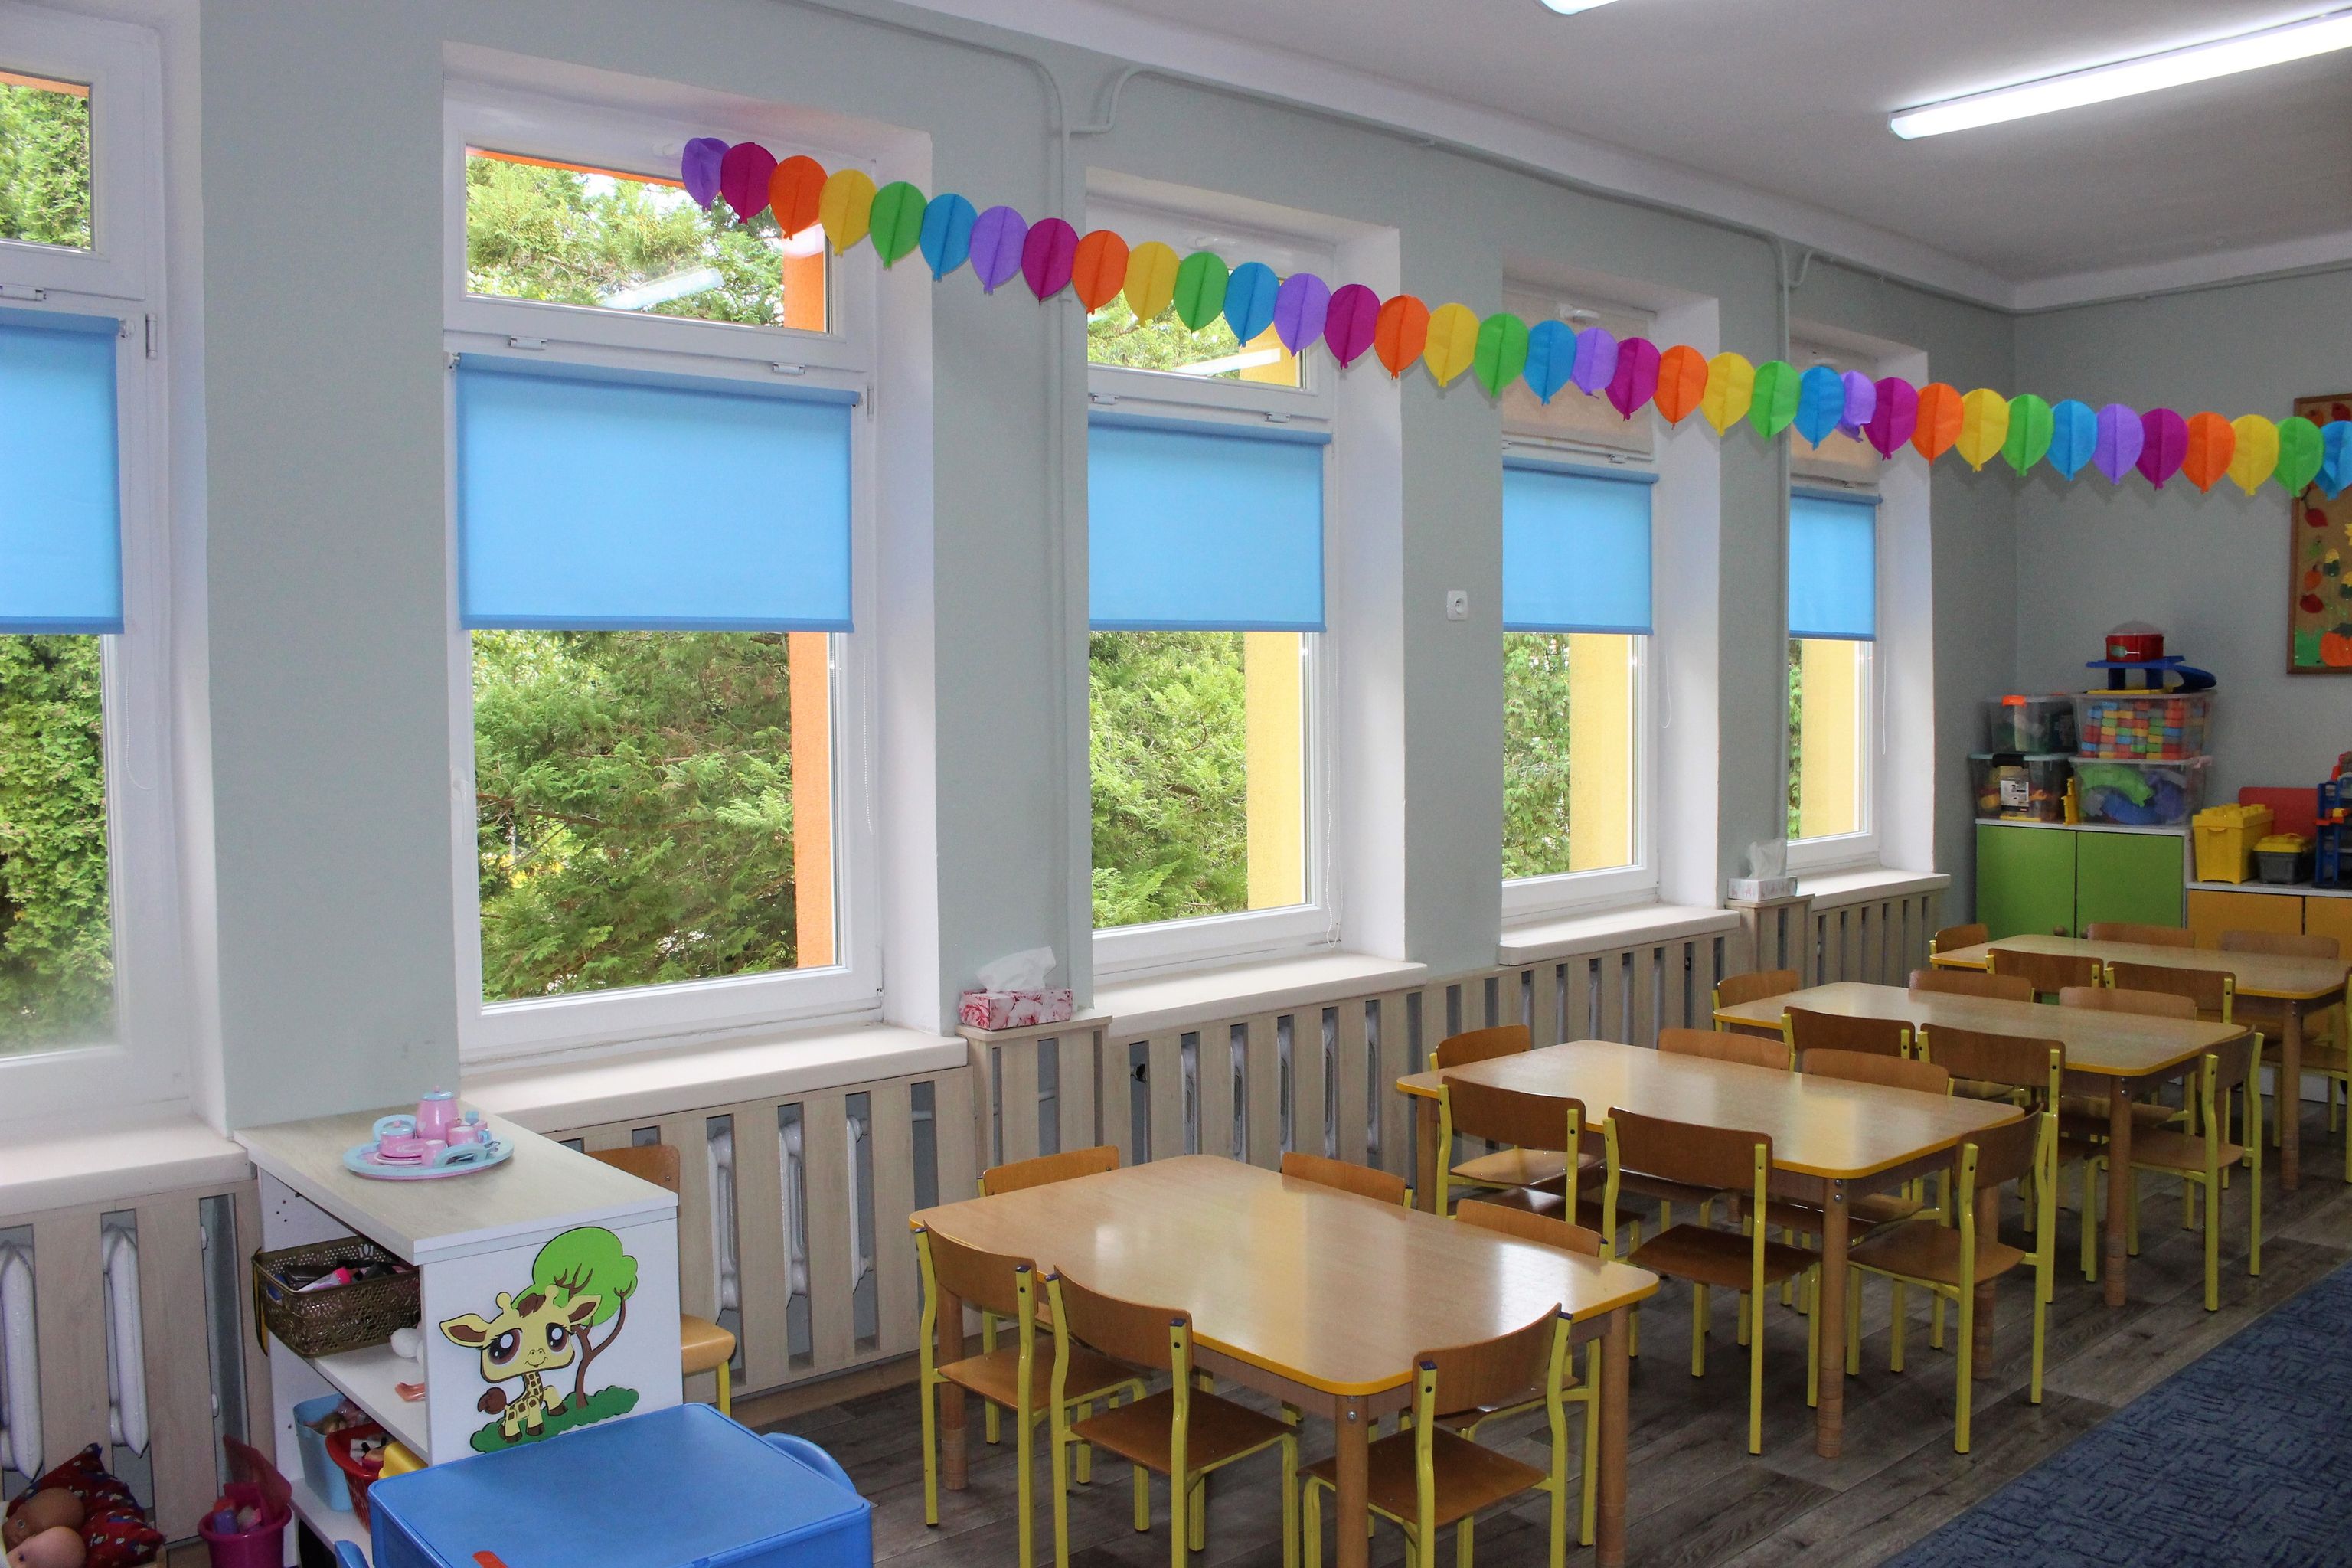 wyremontowana sala w przedszkolu, girlanda zawieszona nad stolikami dla dzieci